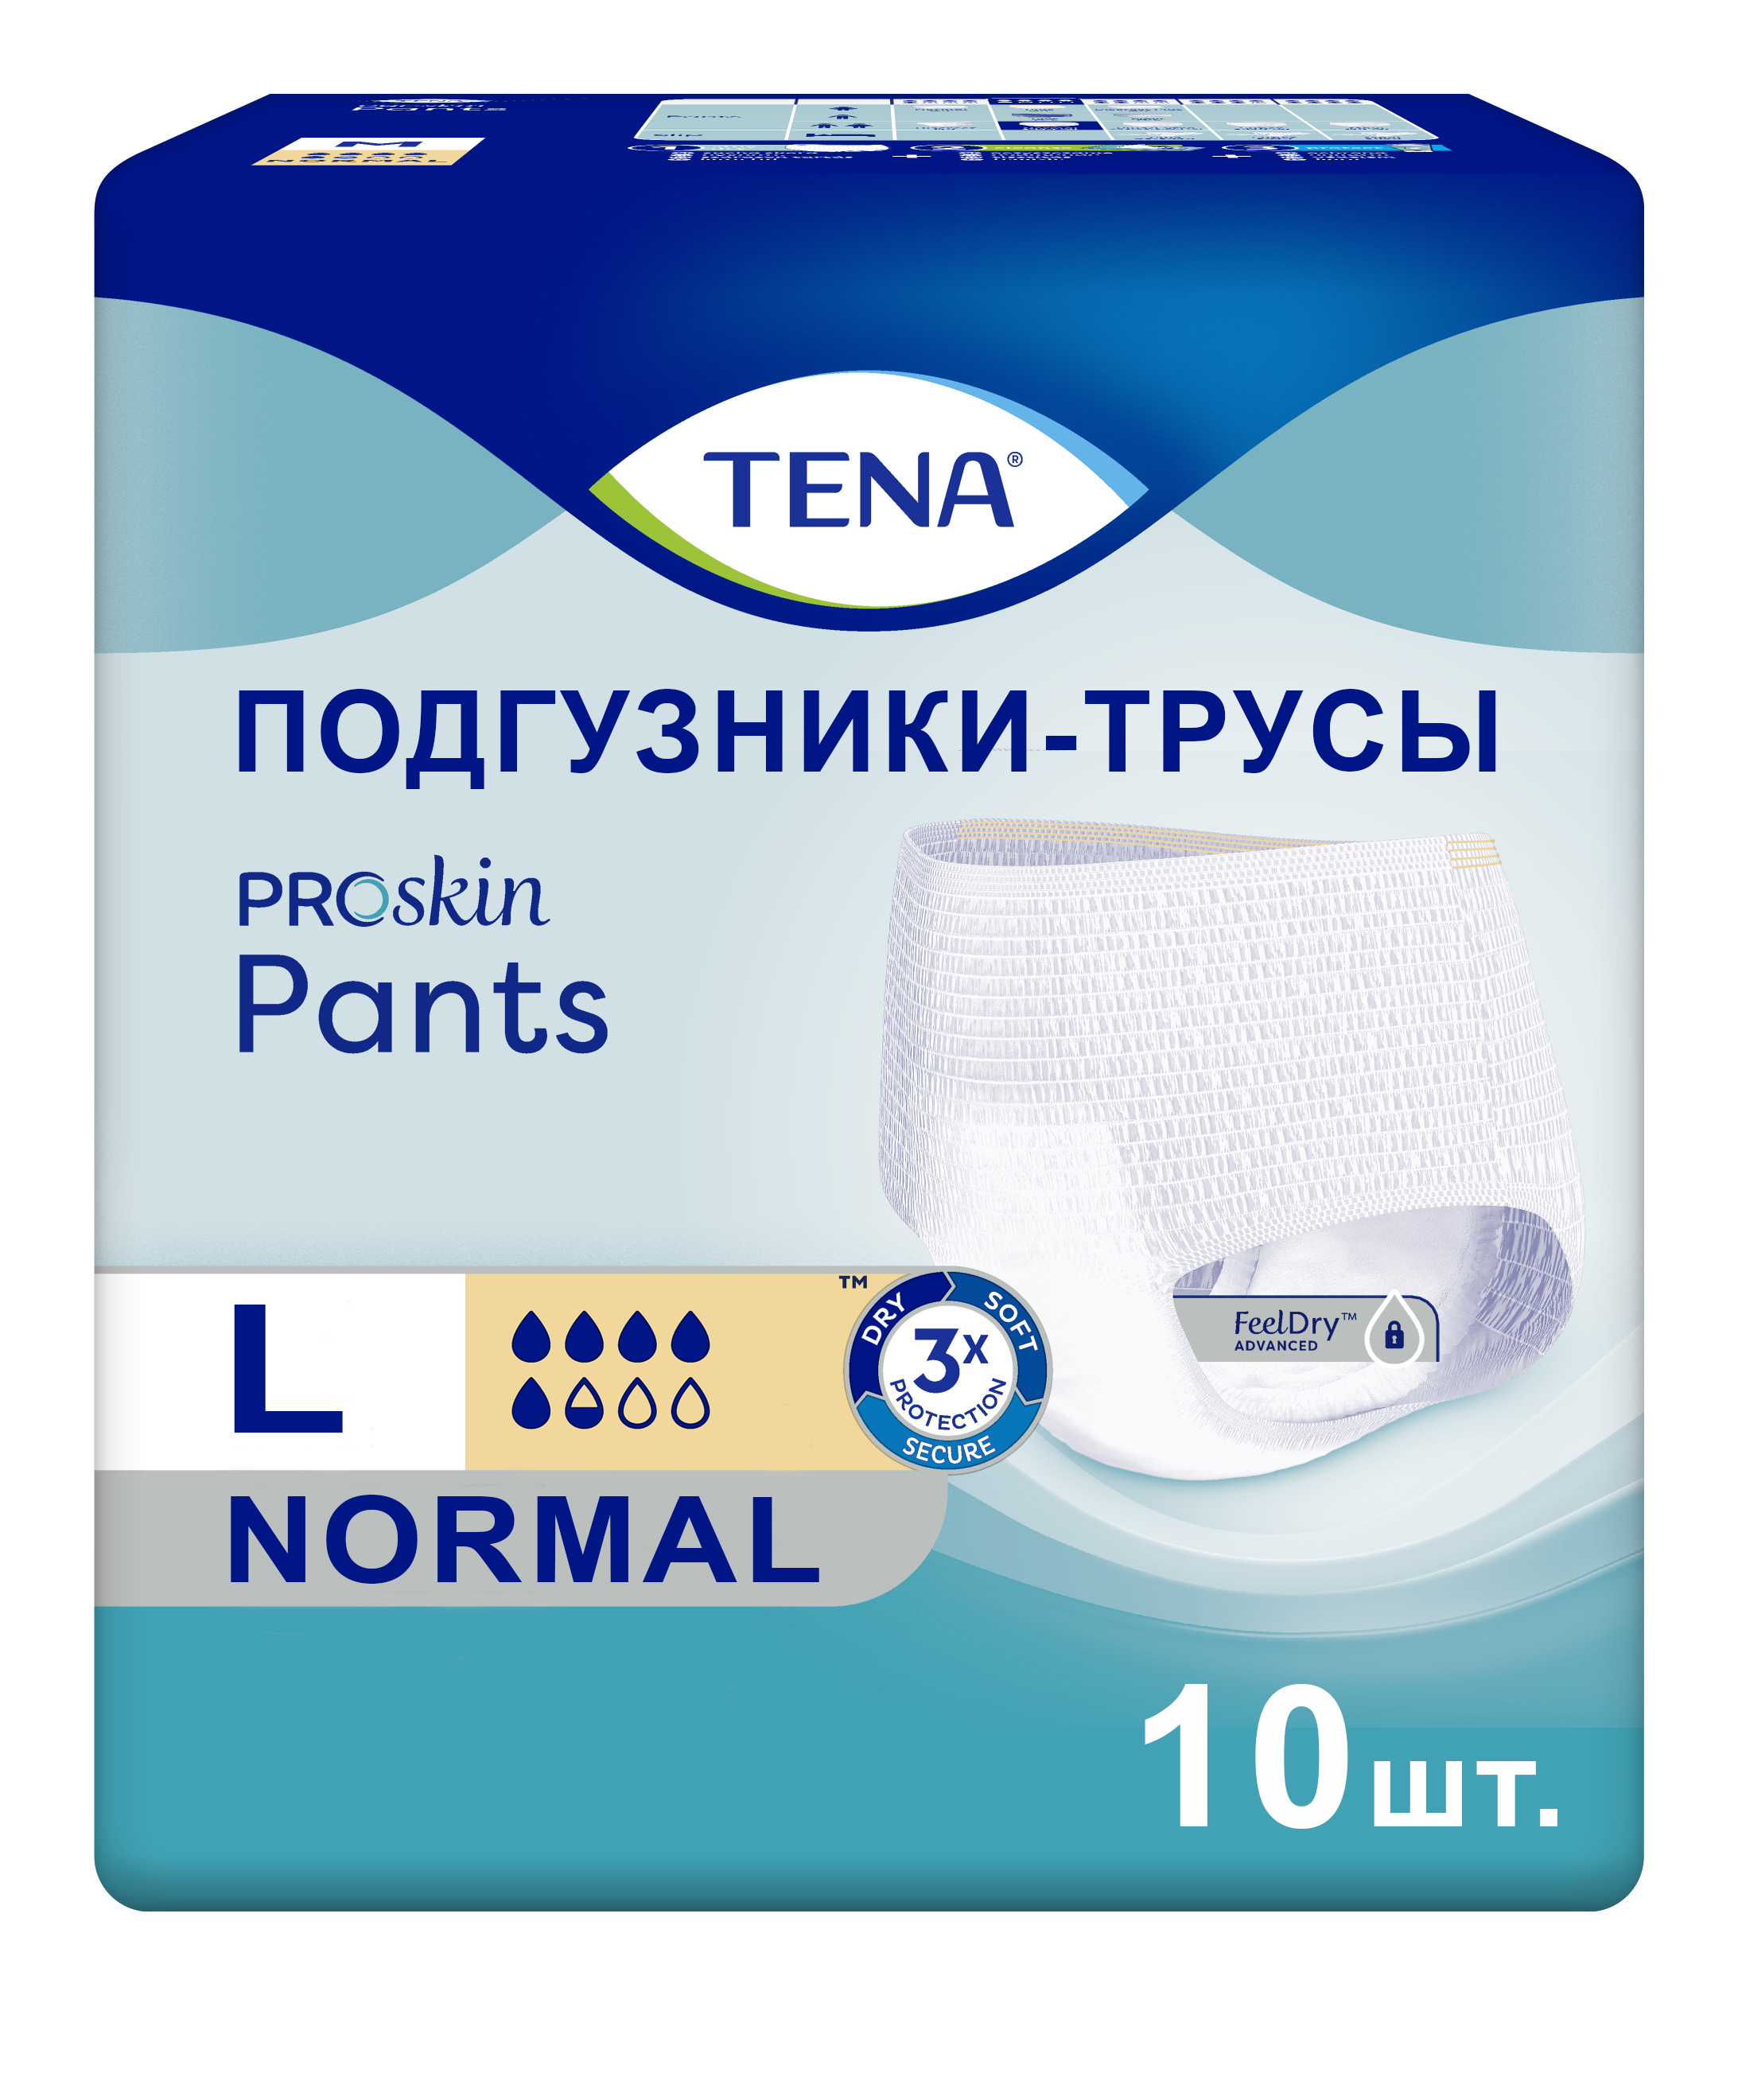 Купить Подгузники для взрослых TENA Pants Normal трусики L 10 шт.